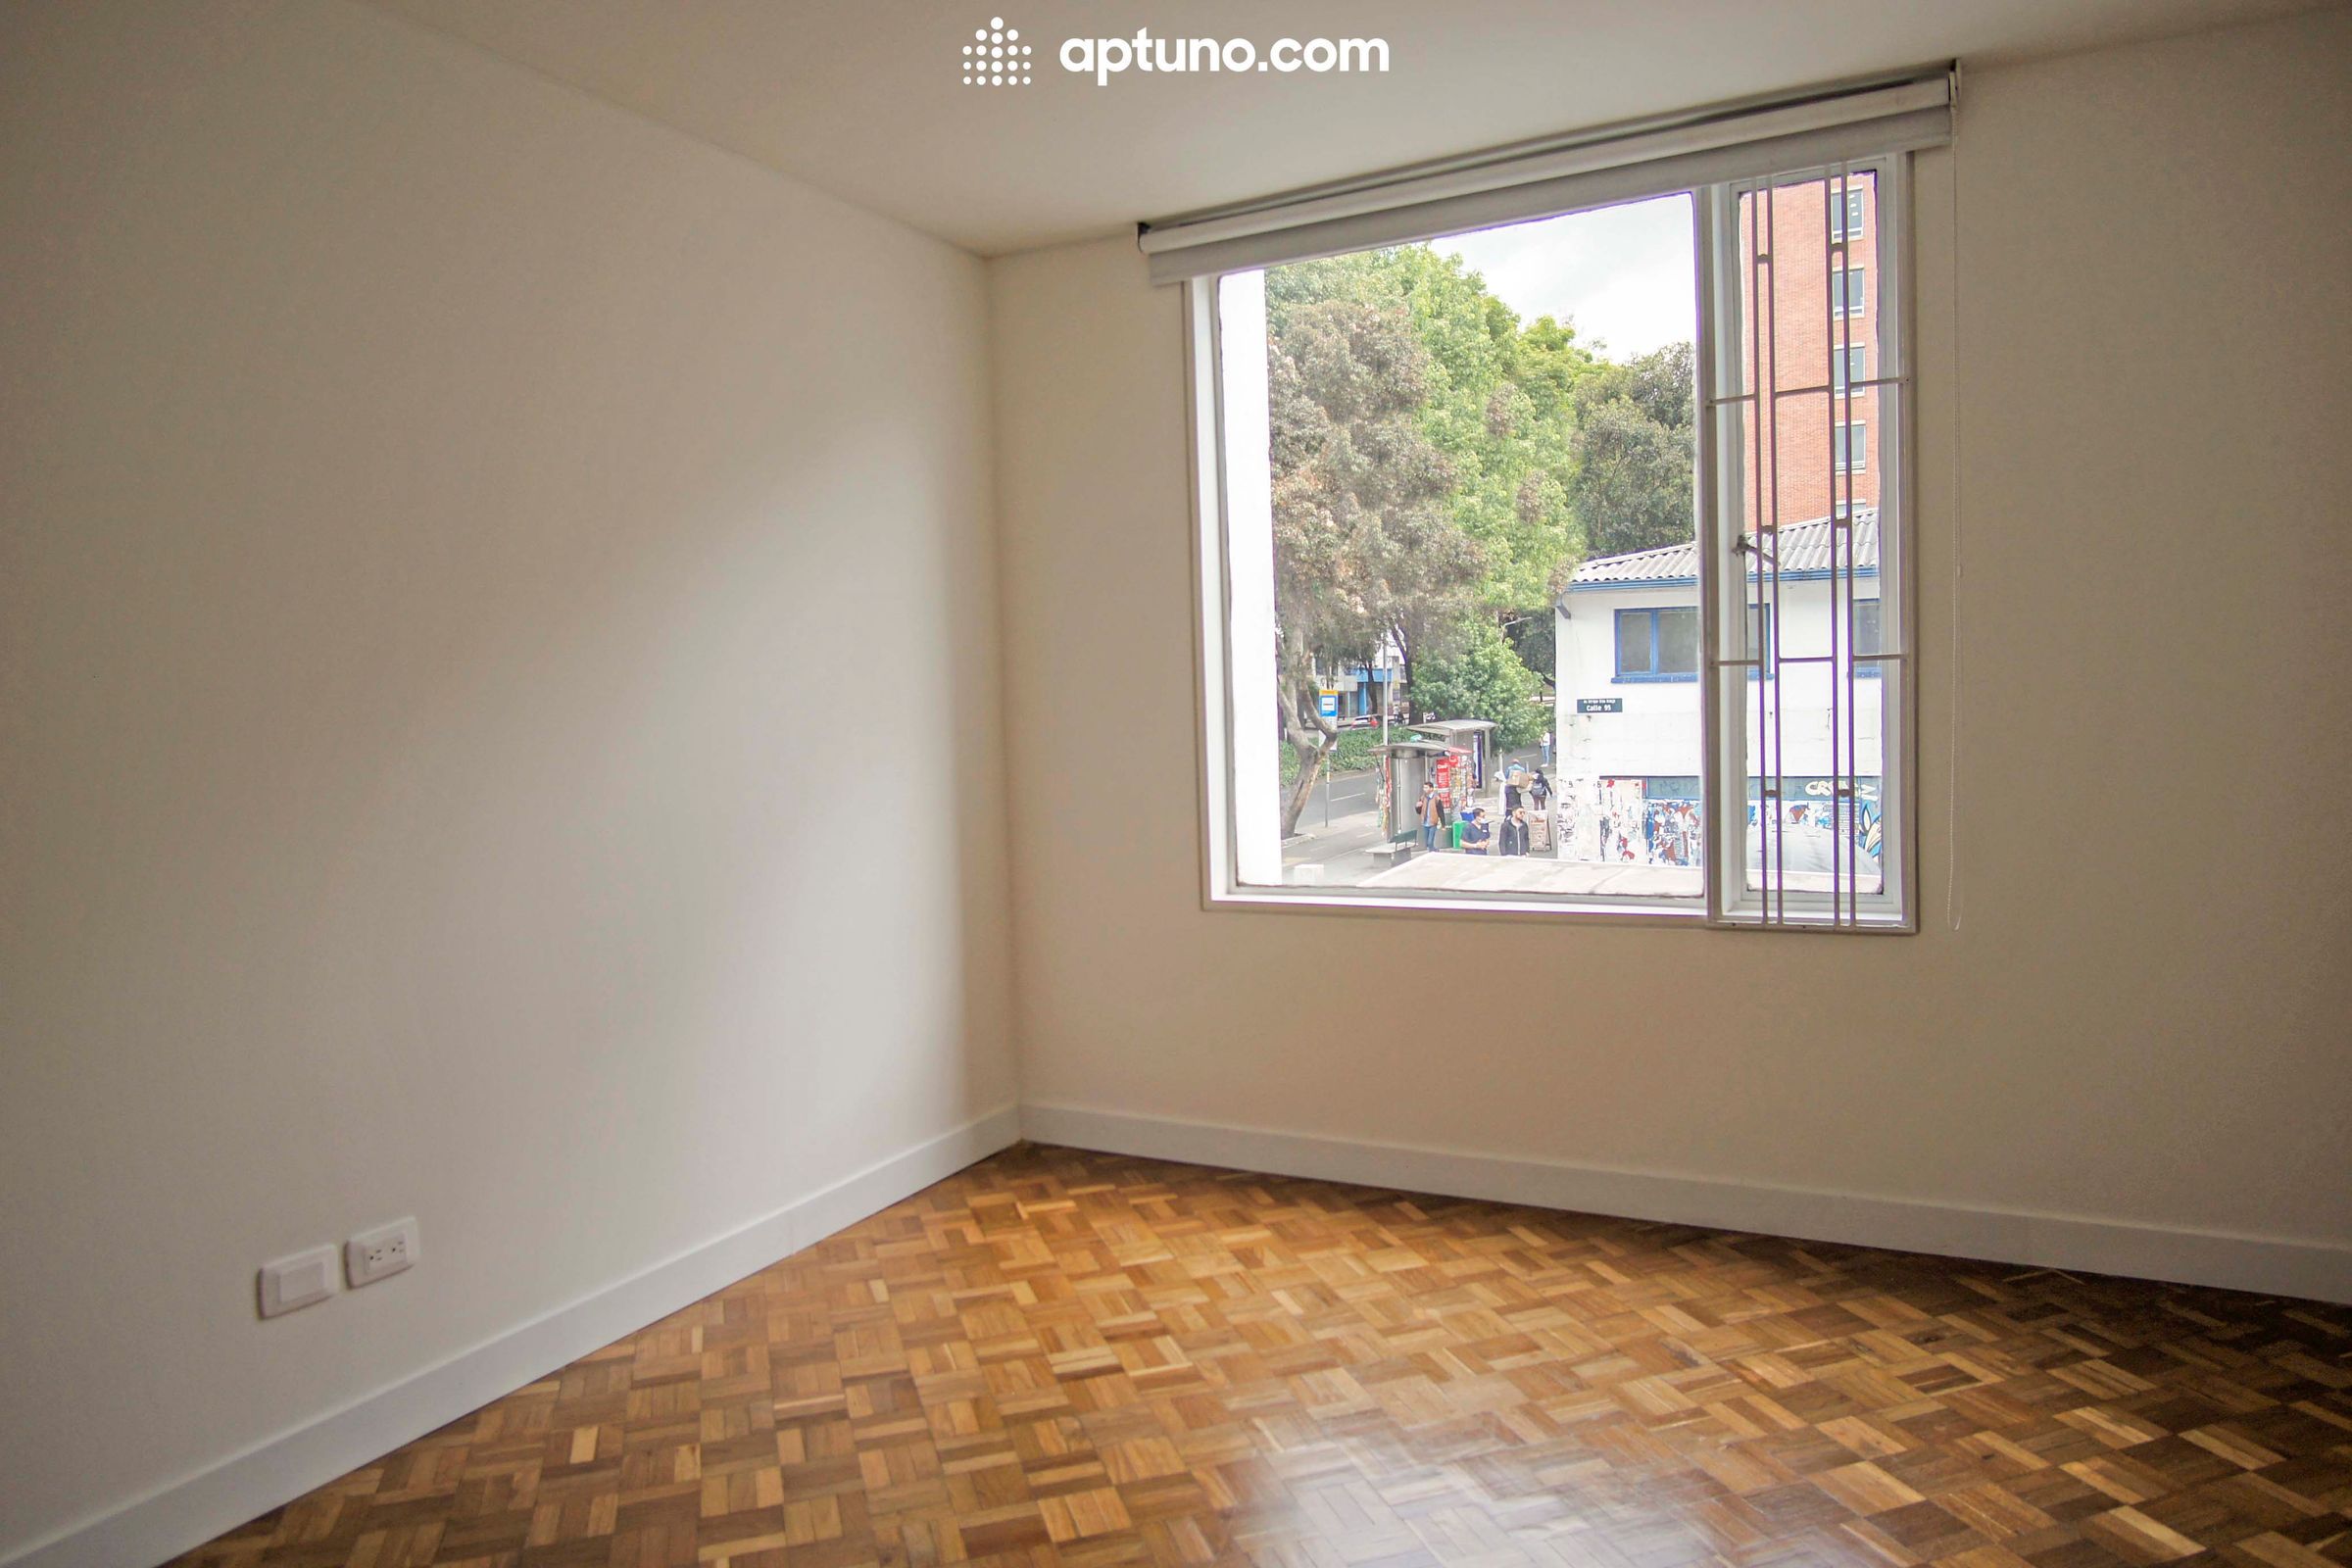 Apartamento en arriendo Chicó Norte II Sector 192 m² - $ 4.450.000,00